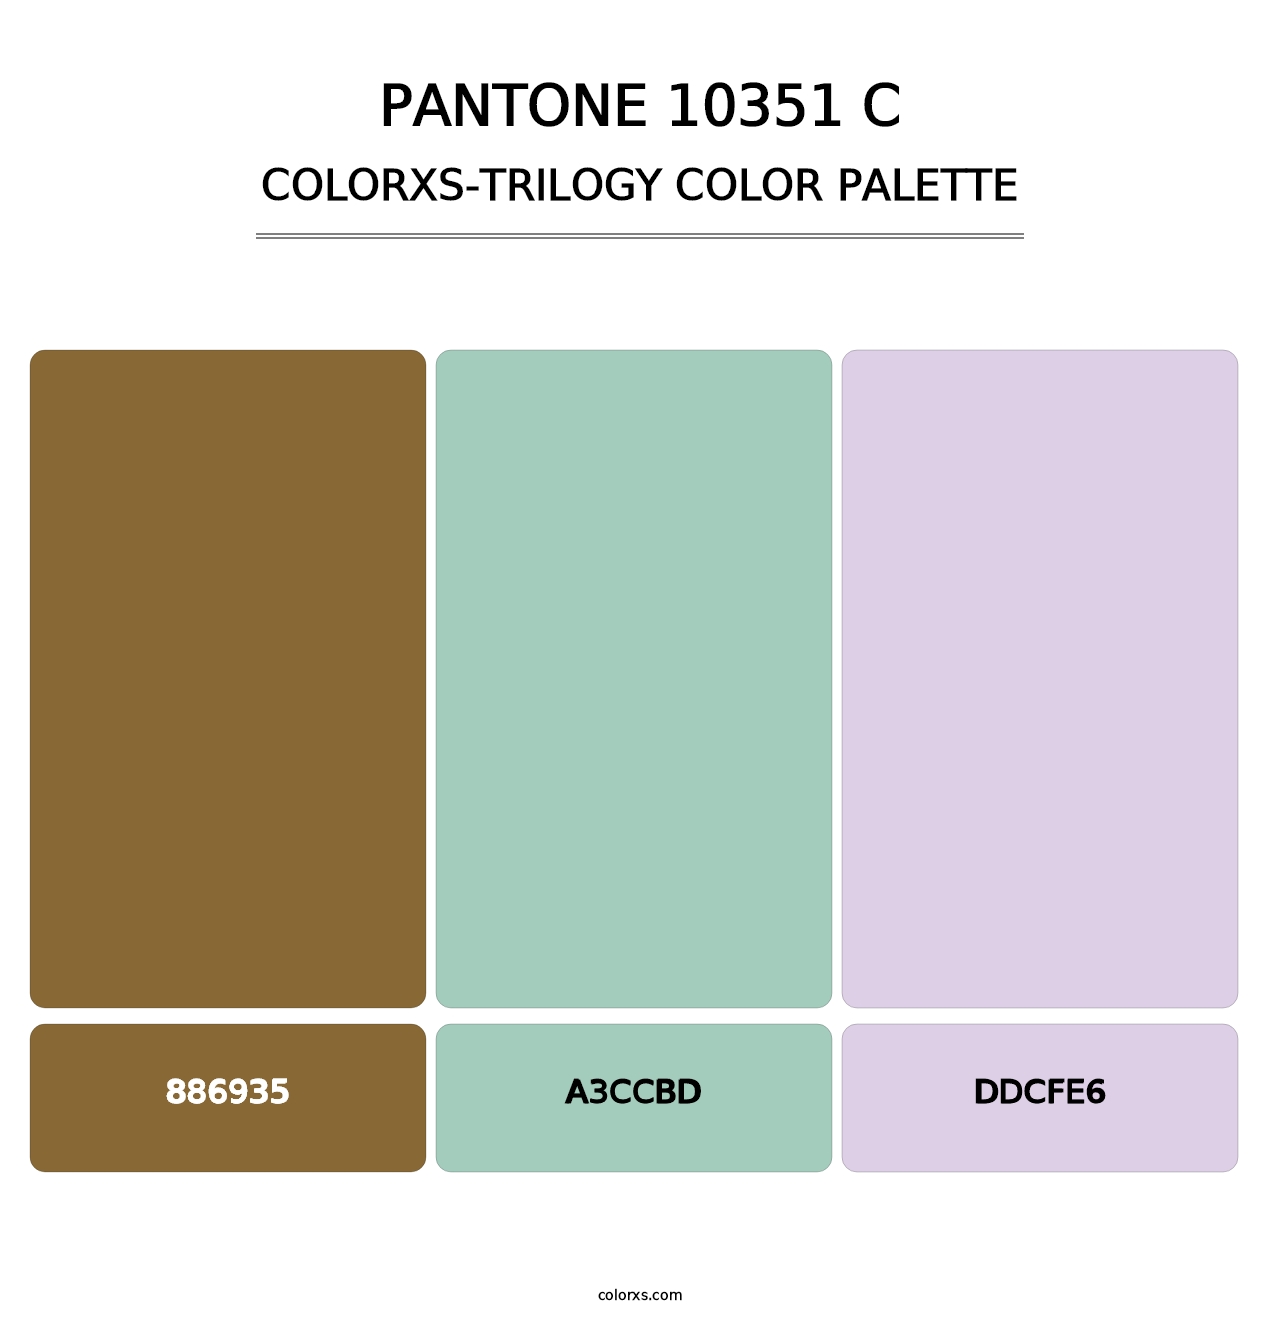 PANTONE 10351 C - Colorxs Trilogy Palette